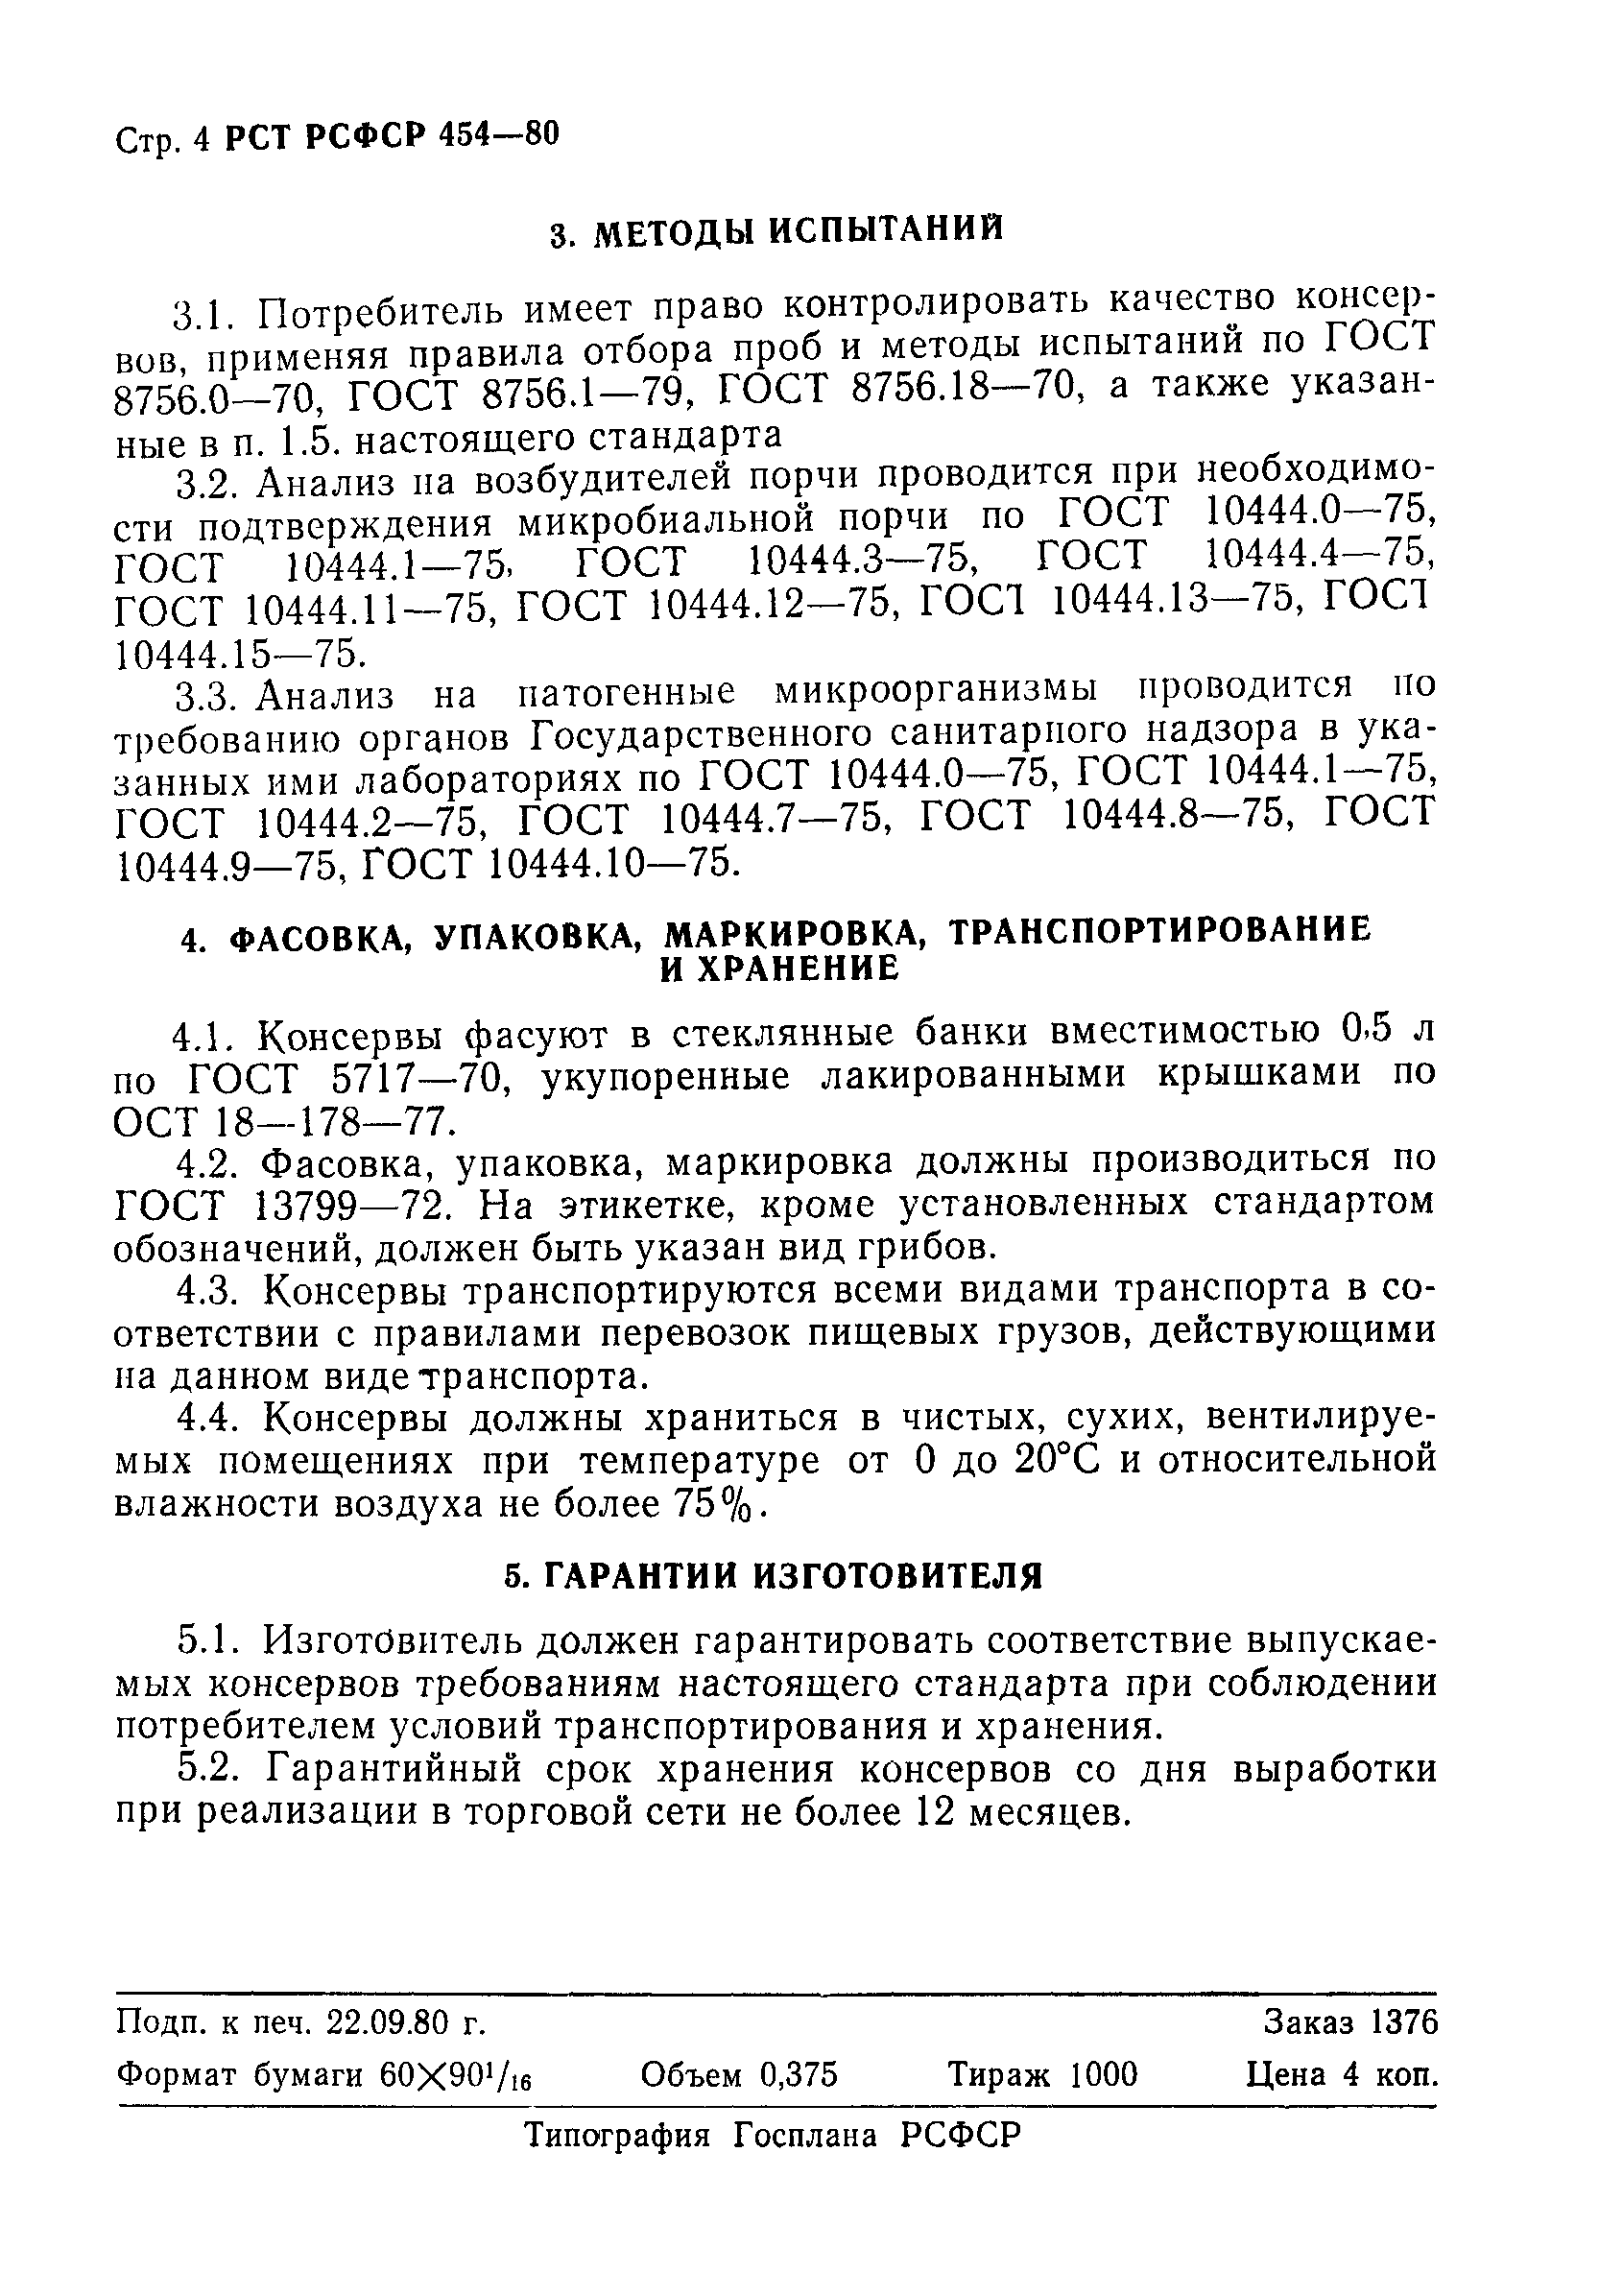 РСТ РСФСР 454-80